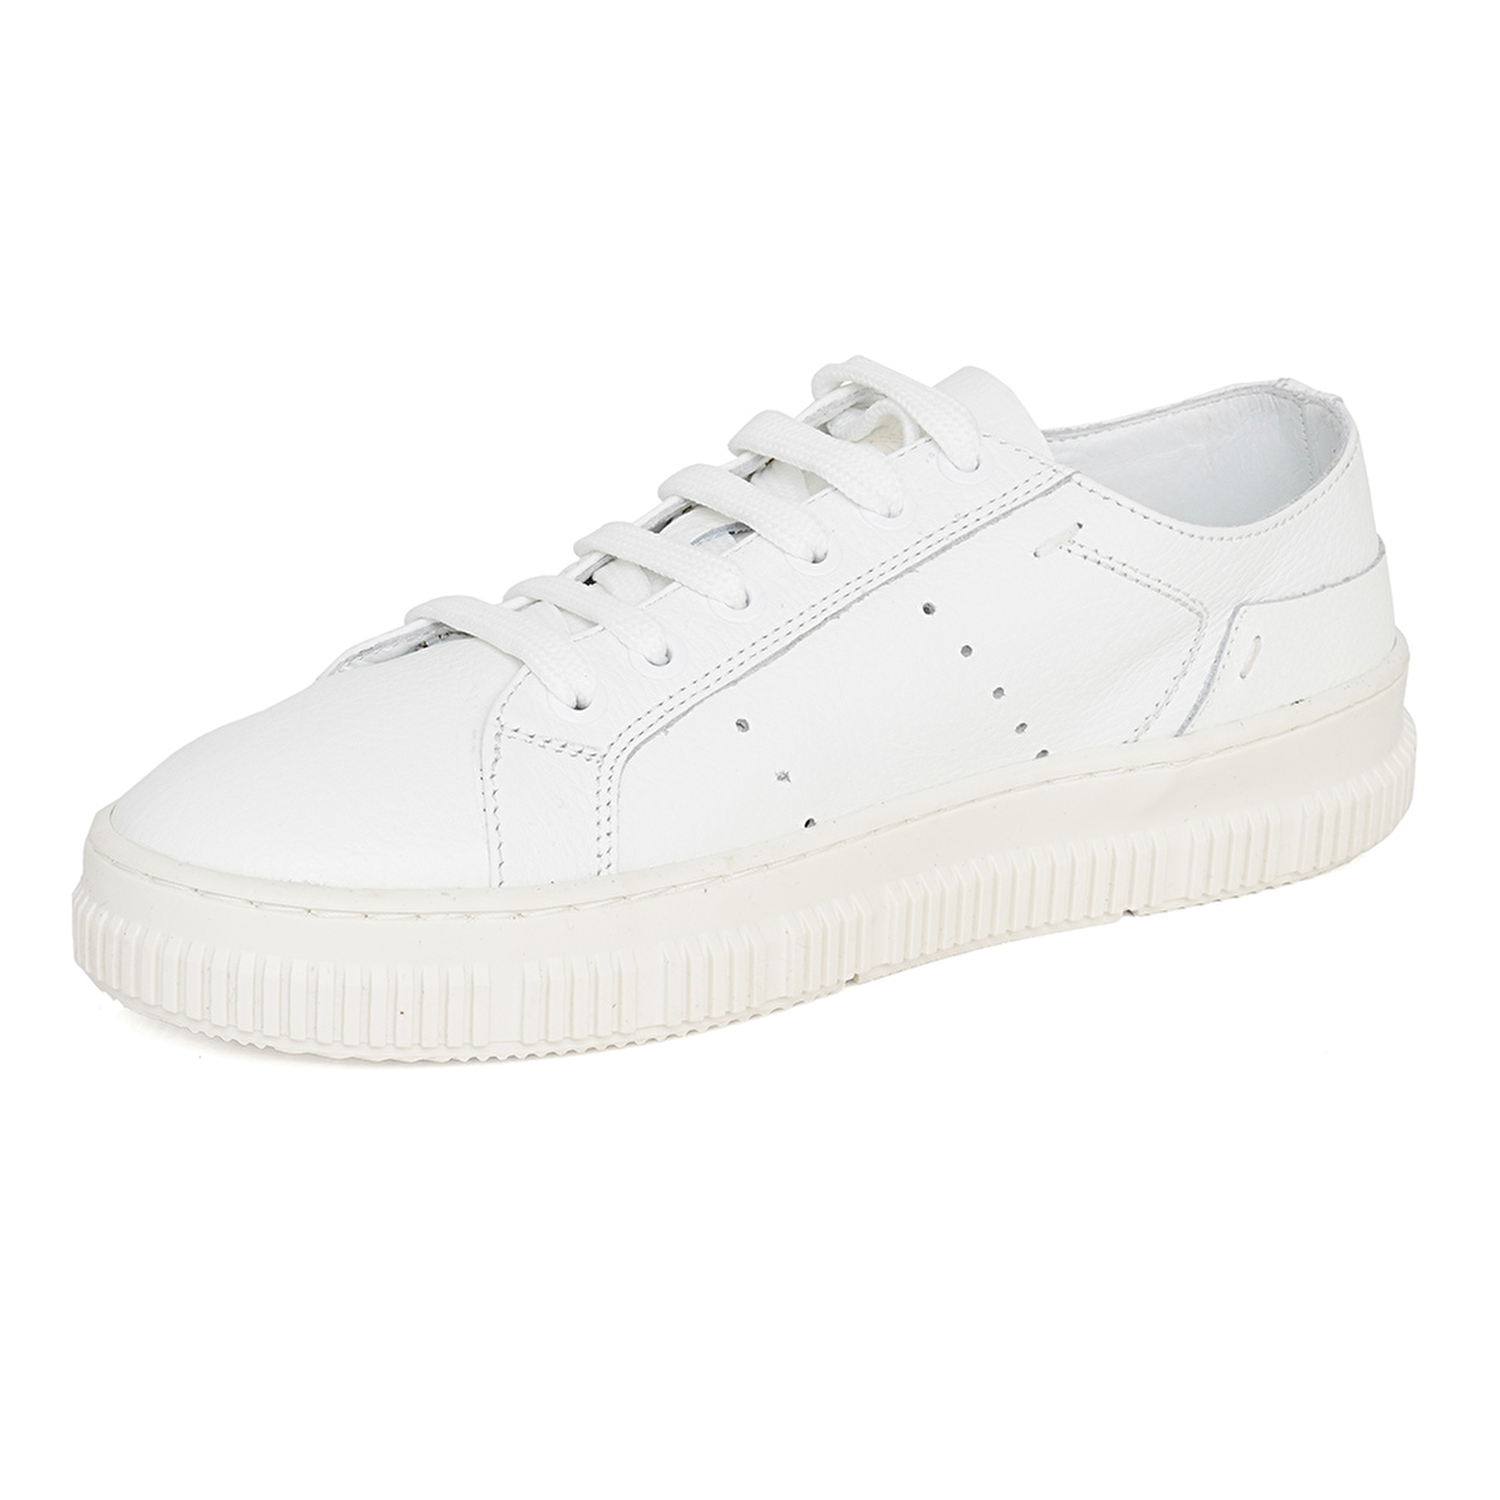 Kadın Beyaz Hakiki Deri Sneaker Ayakkabı 3Y2CA50753-2